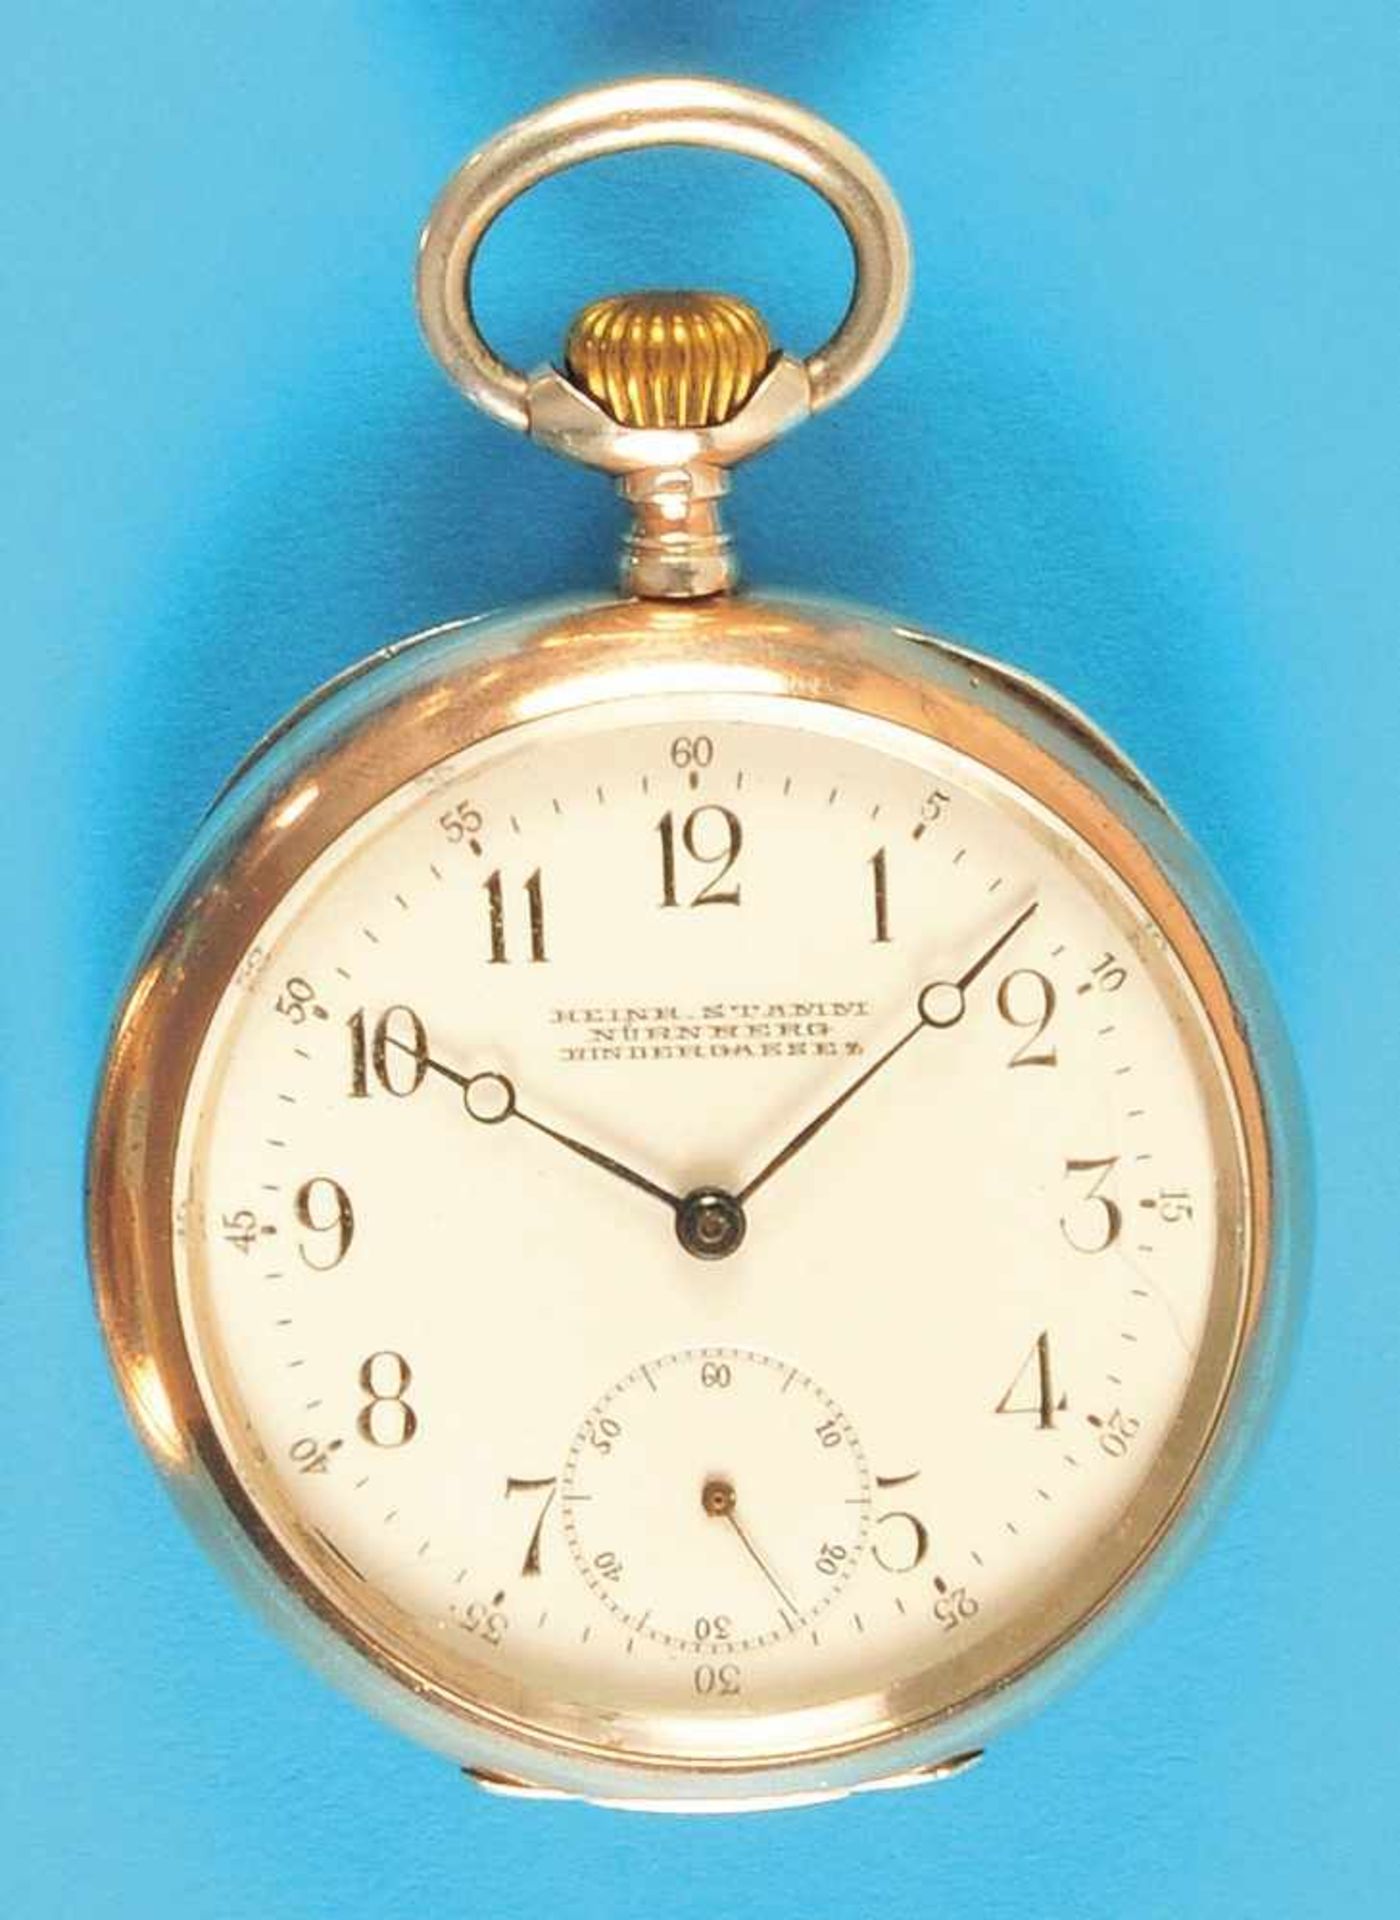 Silver pocket watch, Omega, Heinrich Stamm NürnbergSilbertaschenuhr, Omega, Heinrich Stamm Nürnberg,